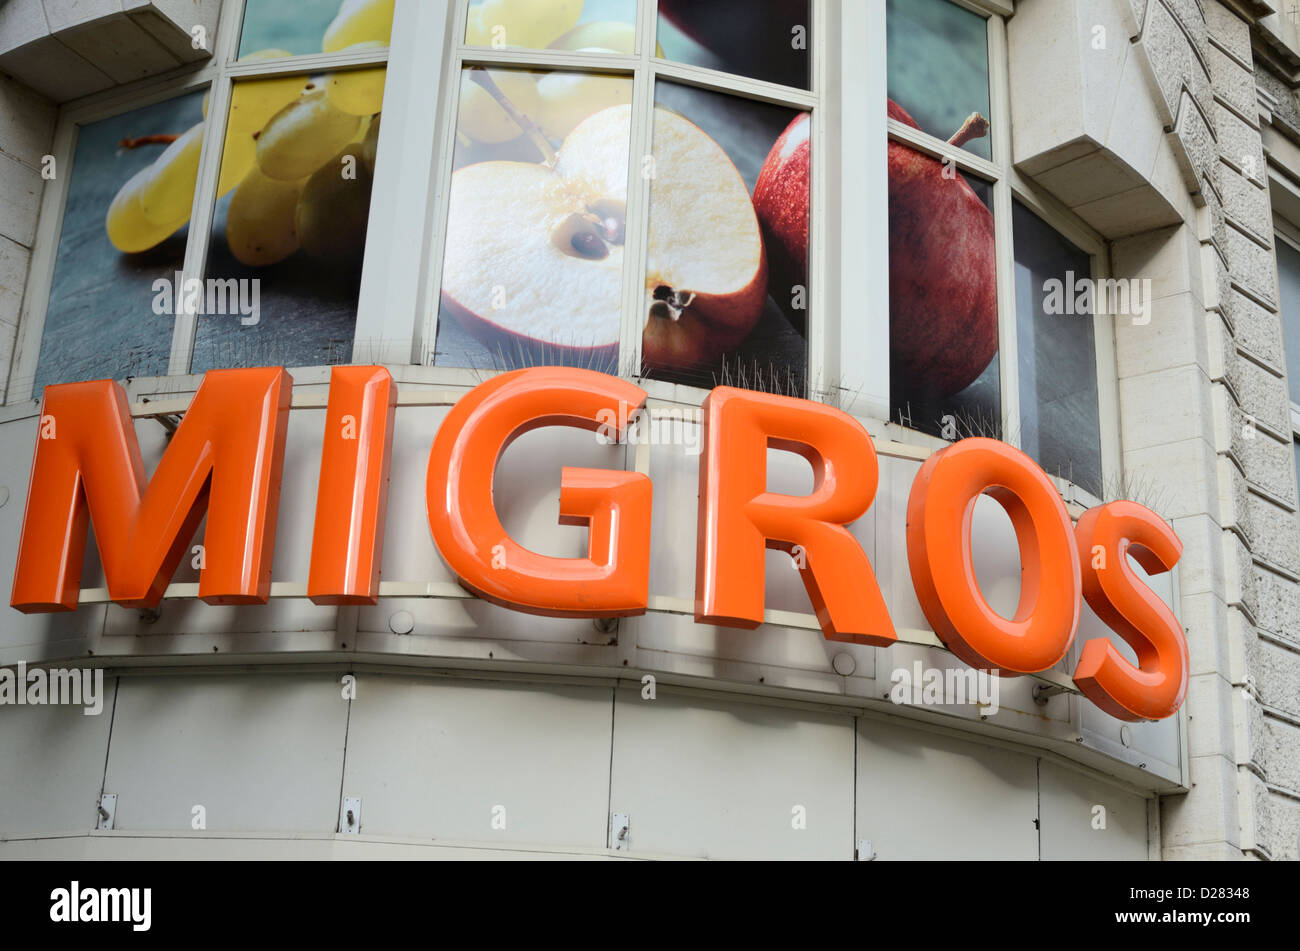 Migros supermarket sign, Basel, Switzerland Stock Photo - Alamy